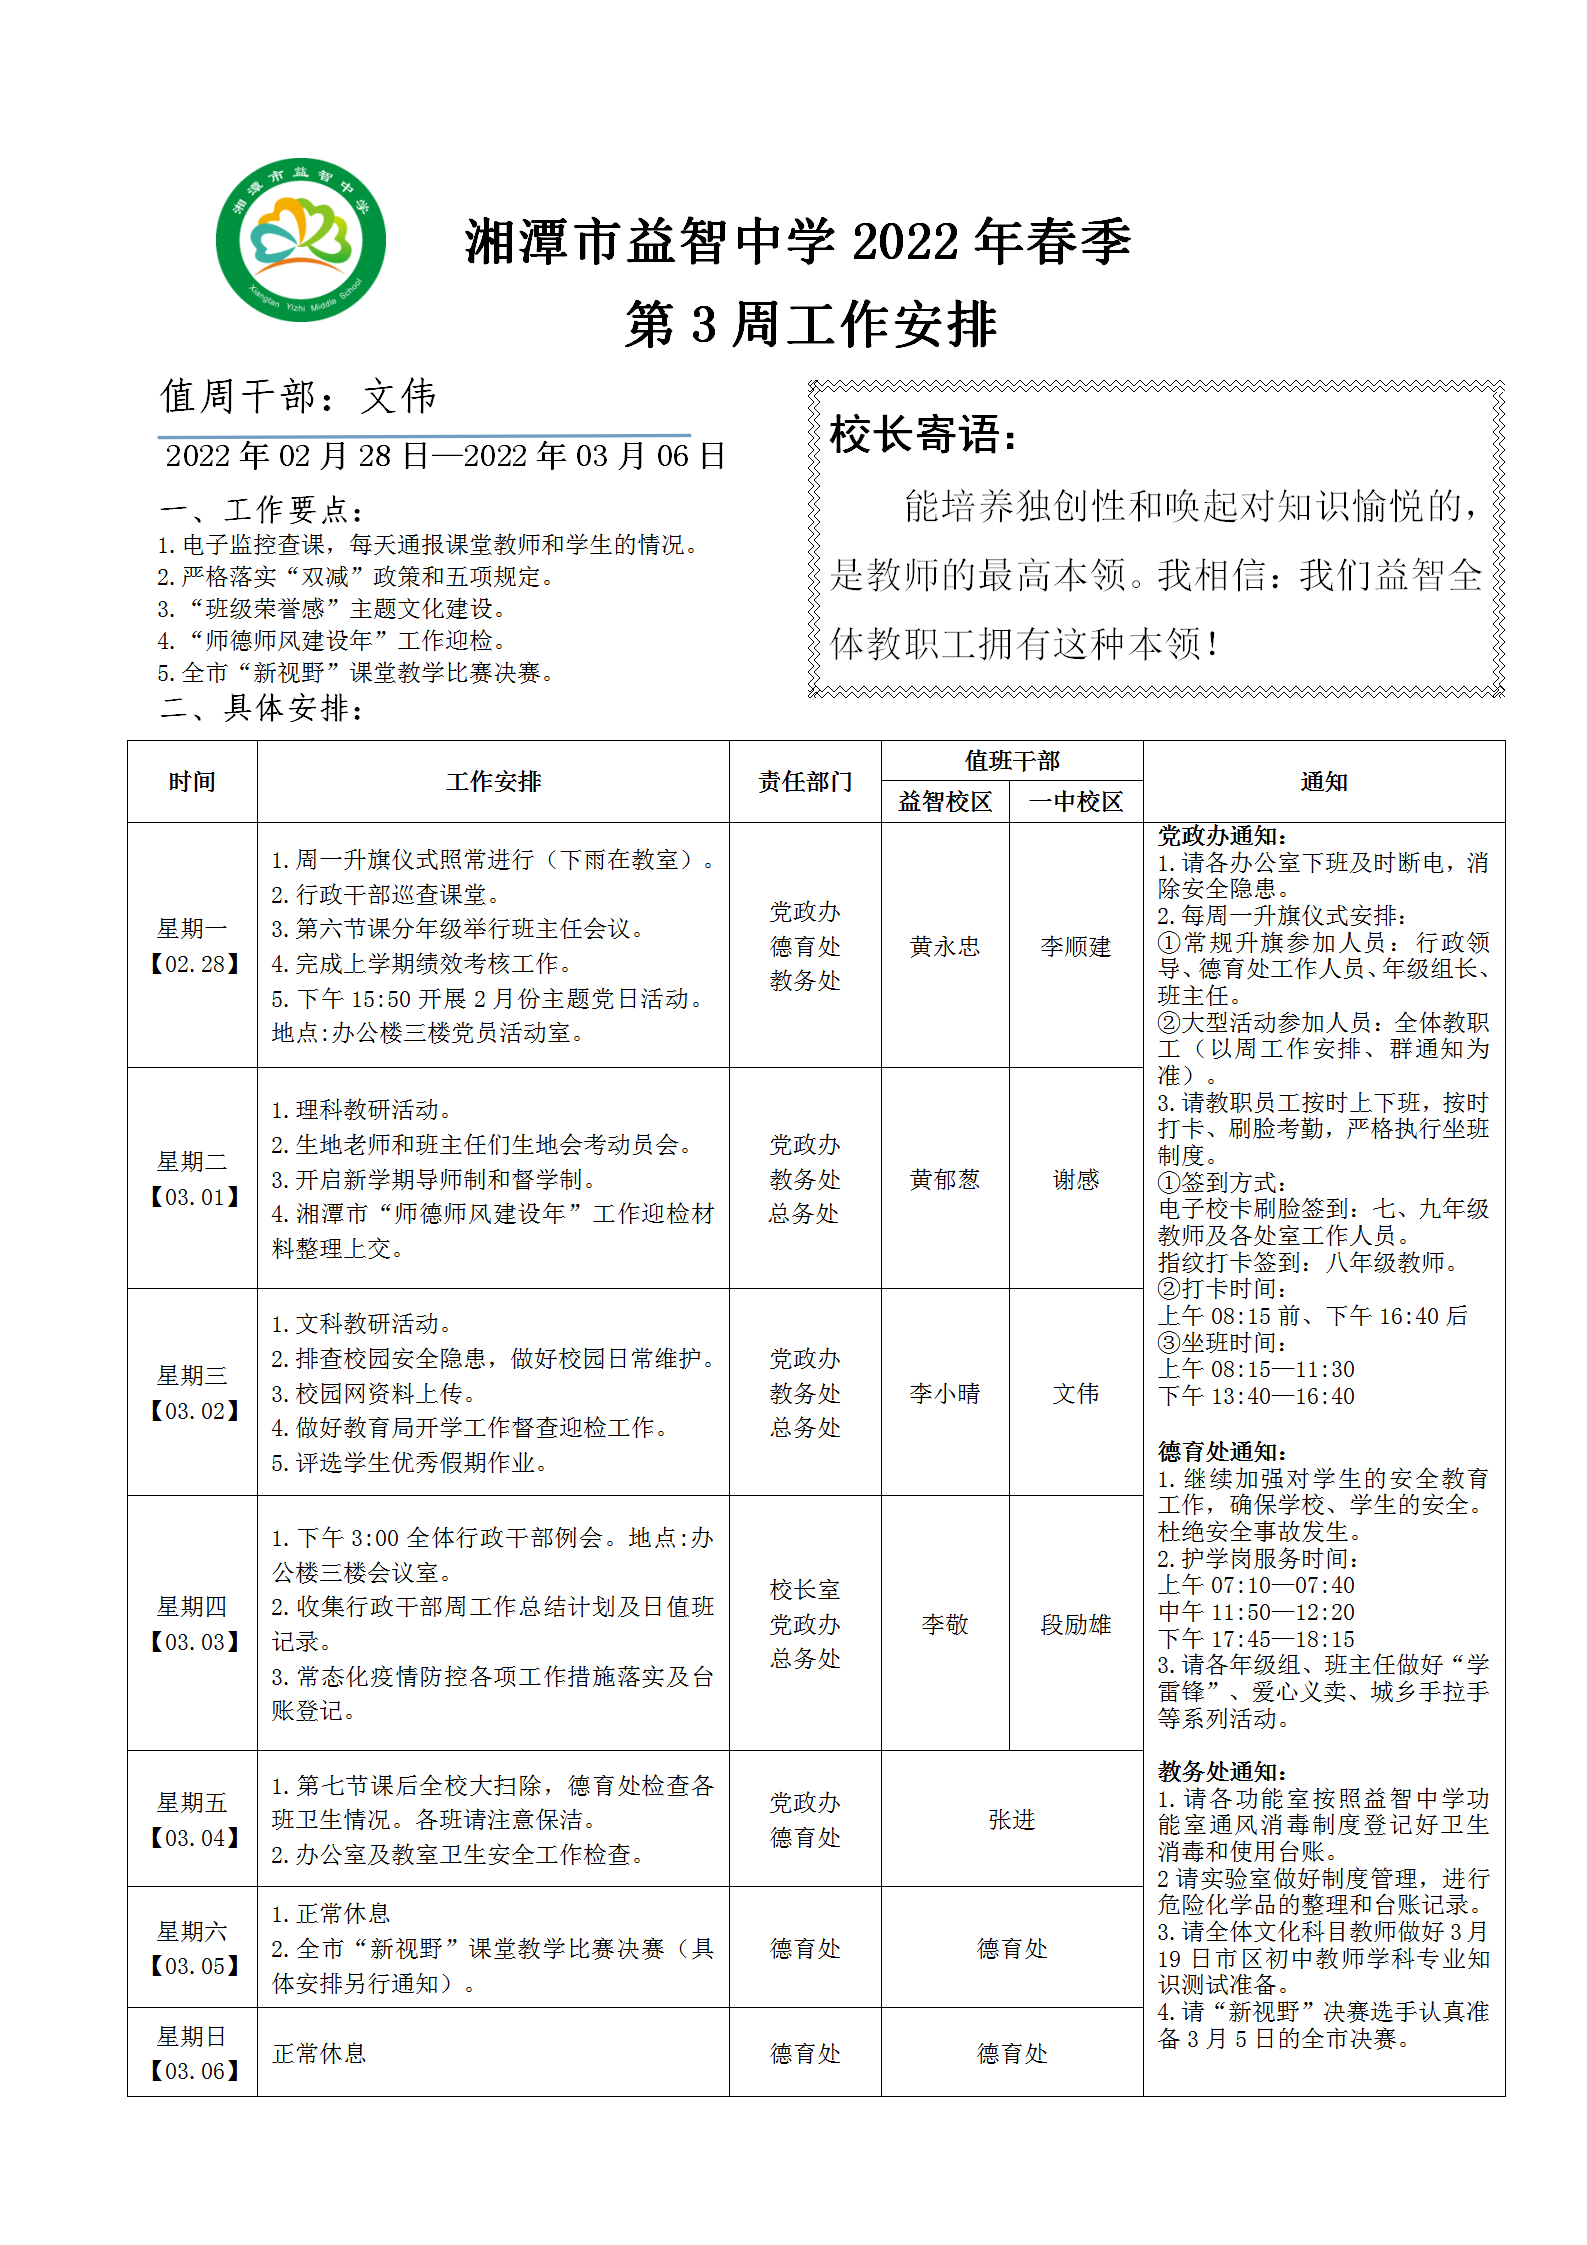 湘潭市益智中学2022年春季第三周工作安排